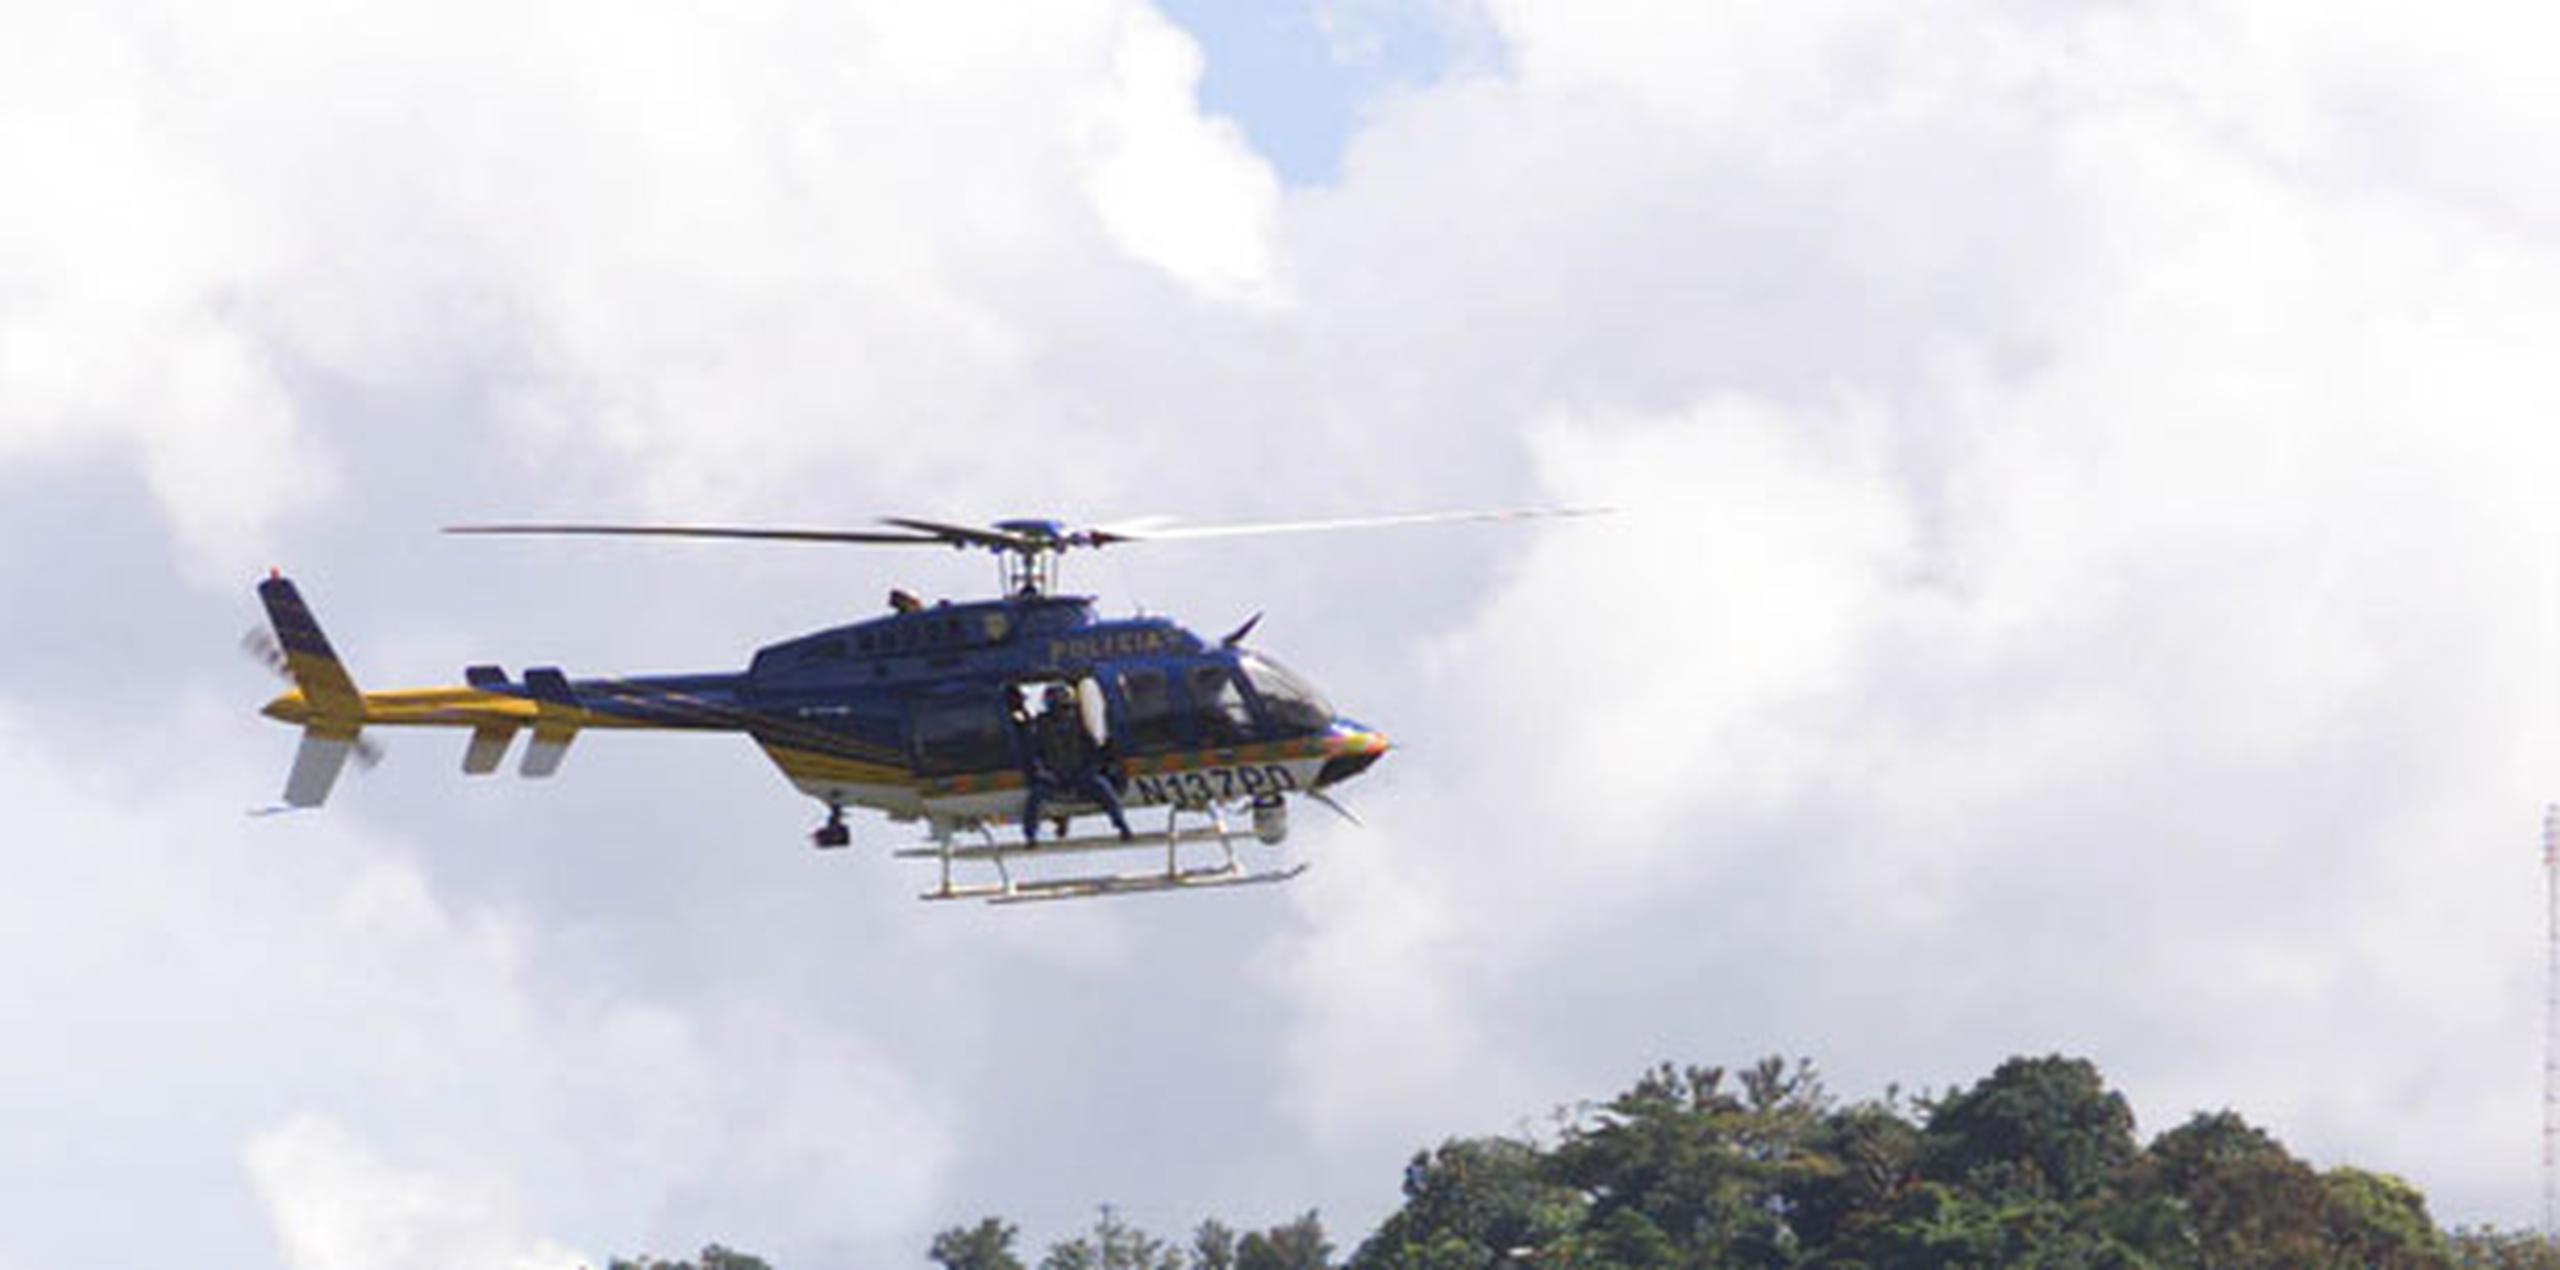 El rescate fue efectuado por la Unidad Marítima de Ceiba, el helicóptero del Negociado de Fuerzas Unidas de Rápida Acción (FURA) y una compañía de remolque de embarcación privada. (Archivo)